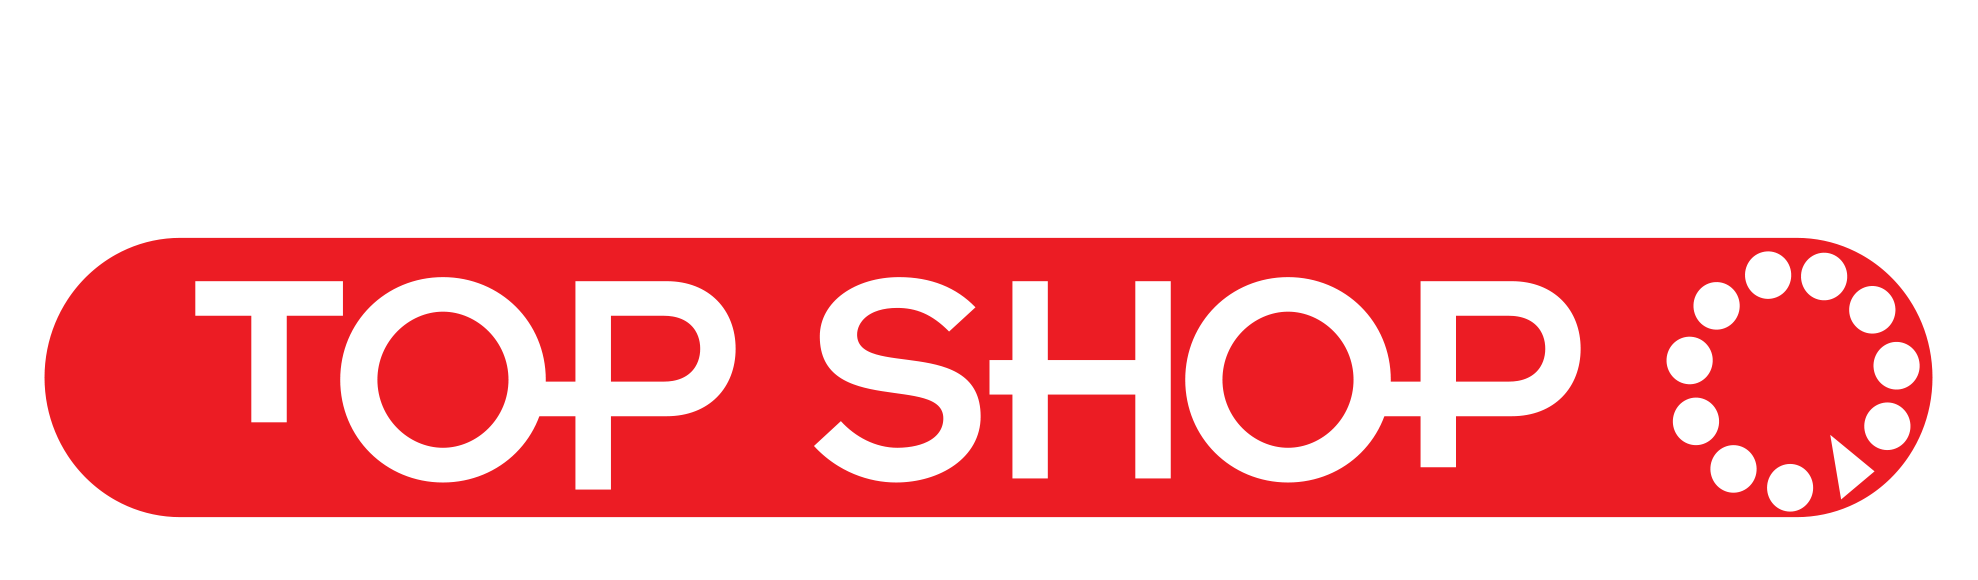 Top Shop3